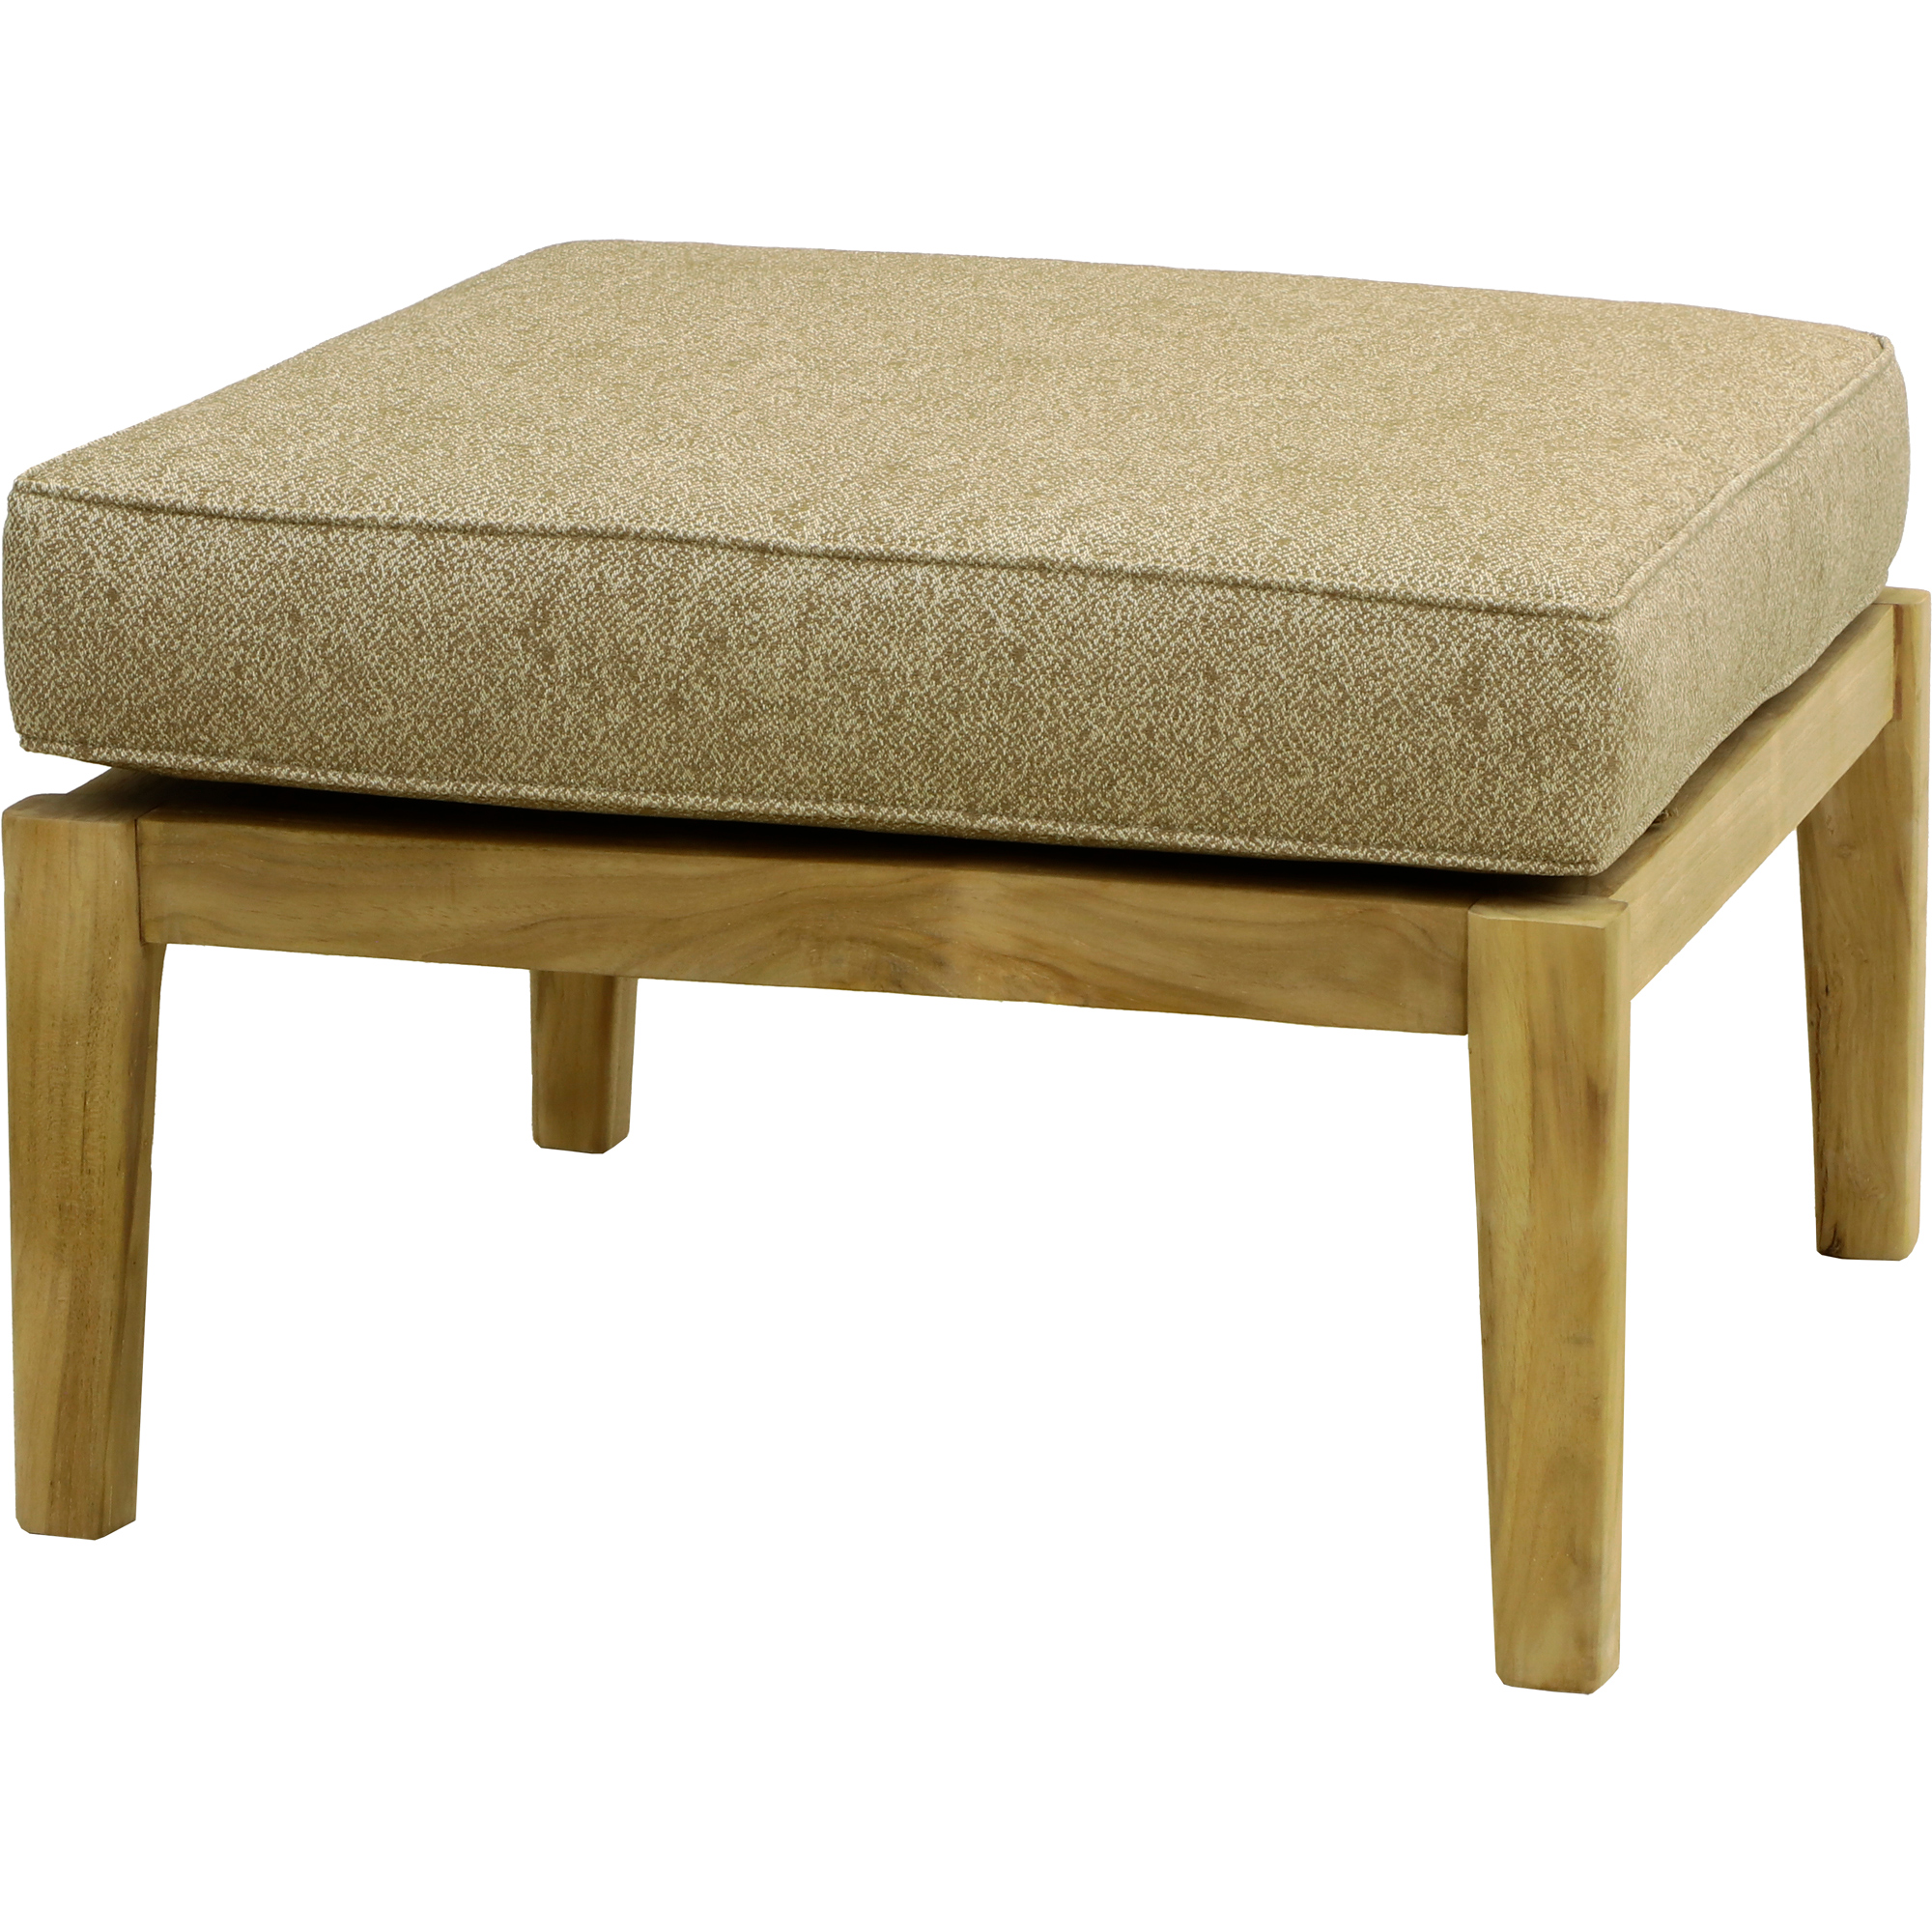 Комплект мебели Jepara Porto Cervo l 6 предметов, цвет коричневый, размер 82х210х85 - фото 9